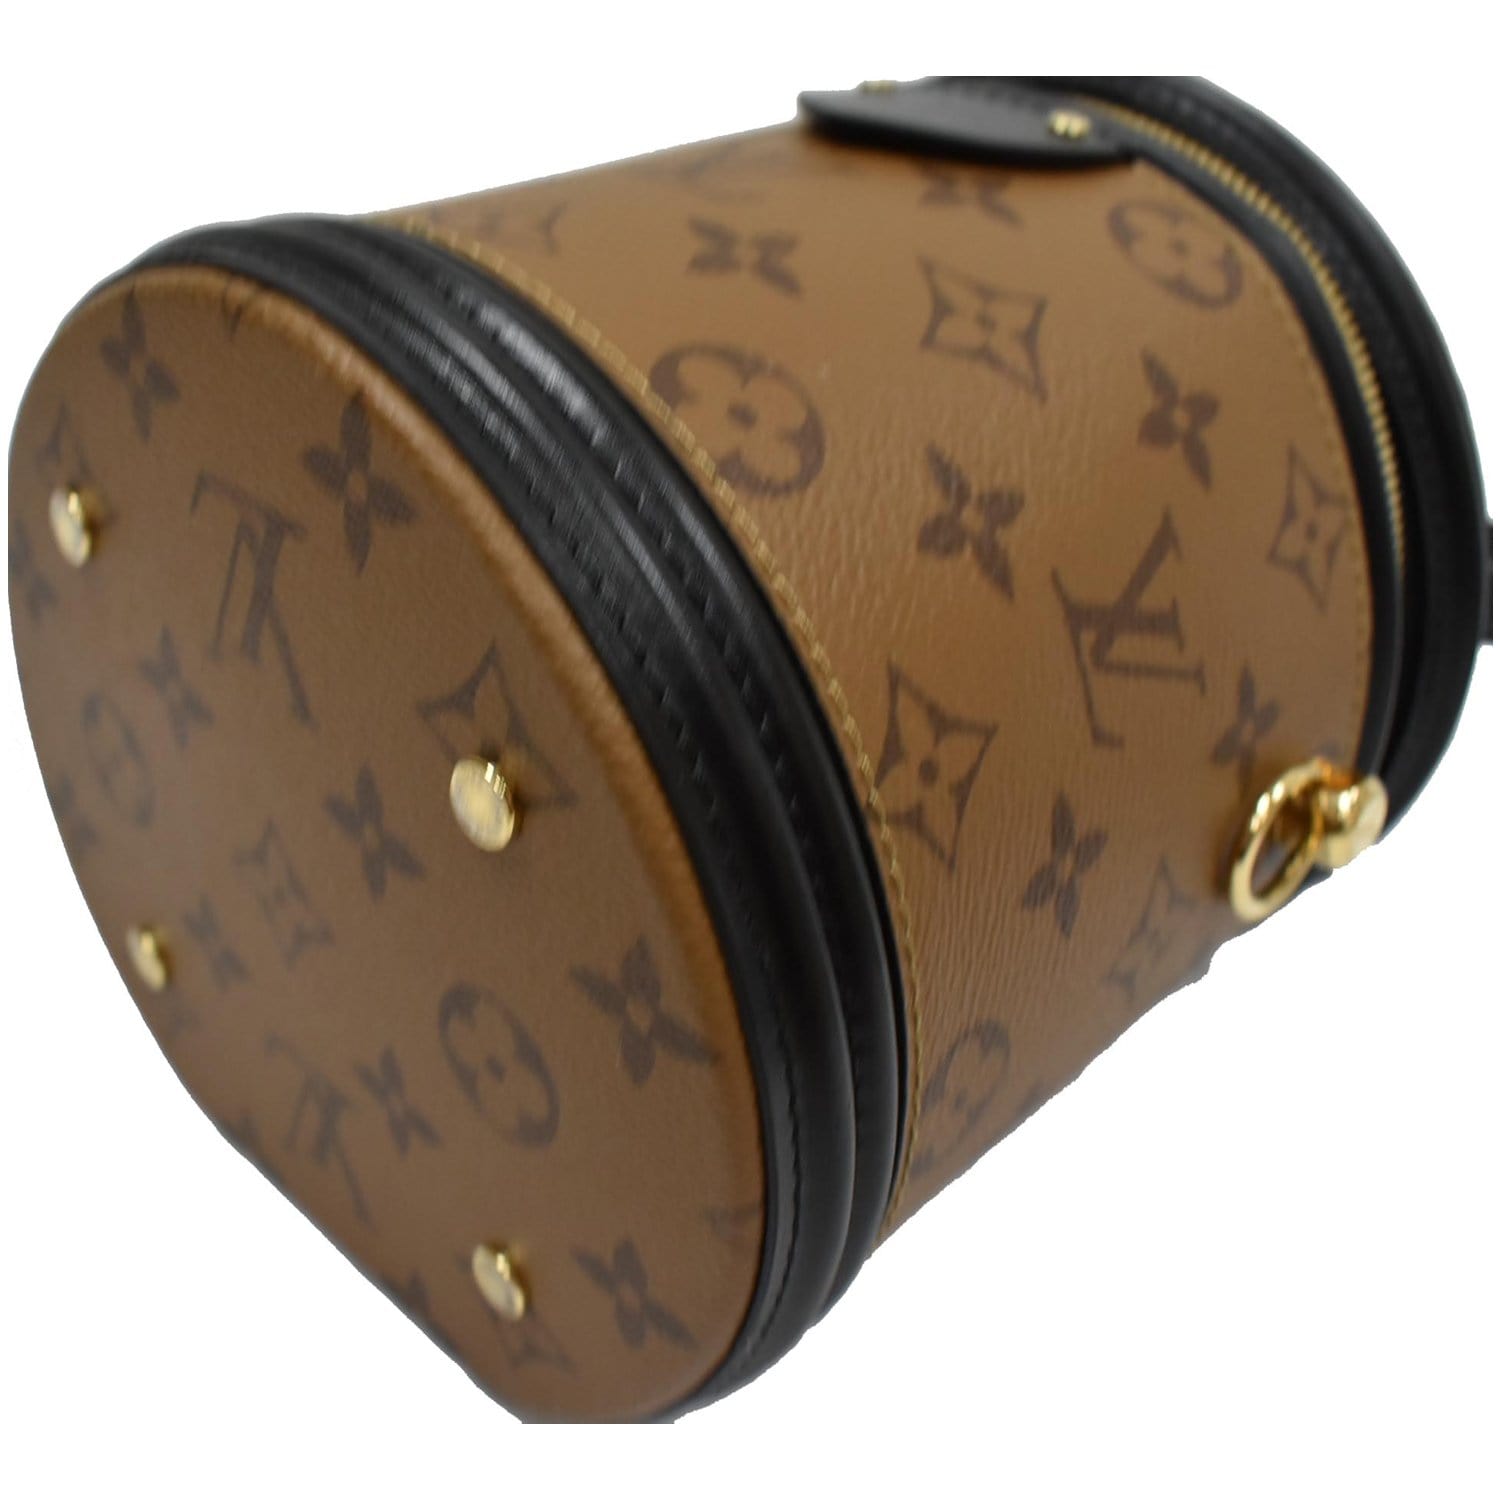 Cannes cloth handbag Louis Vuitton Brown in Cloth - 26164289